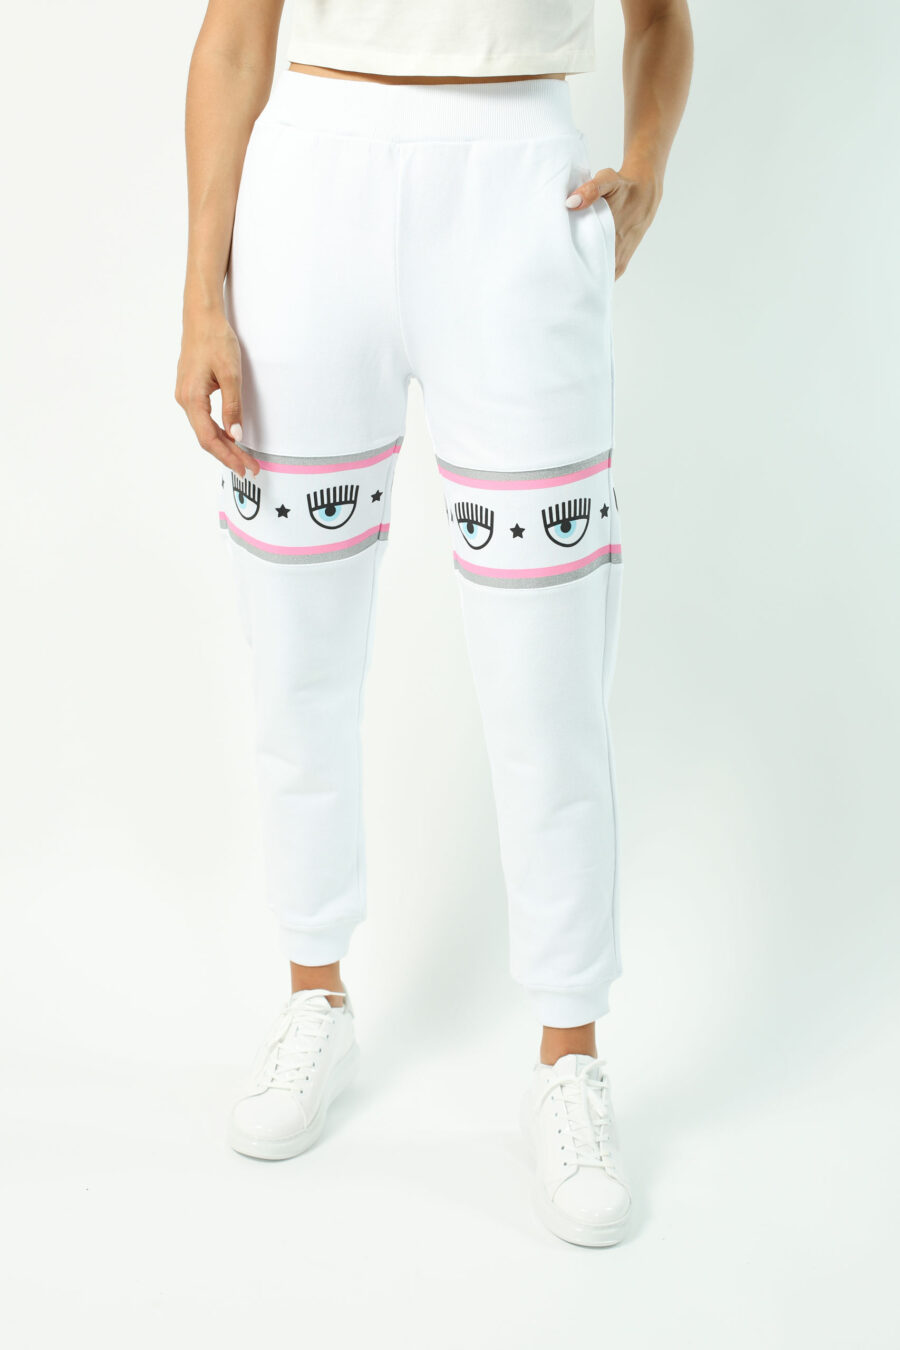 Pantalón de chándal blanco y logo en cinta rosa y plateado - Photos 2678